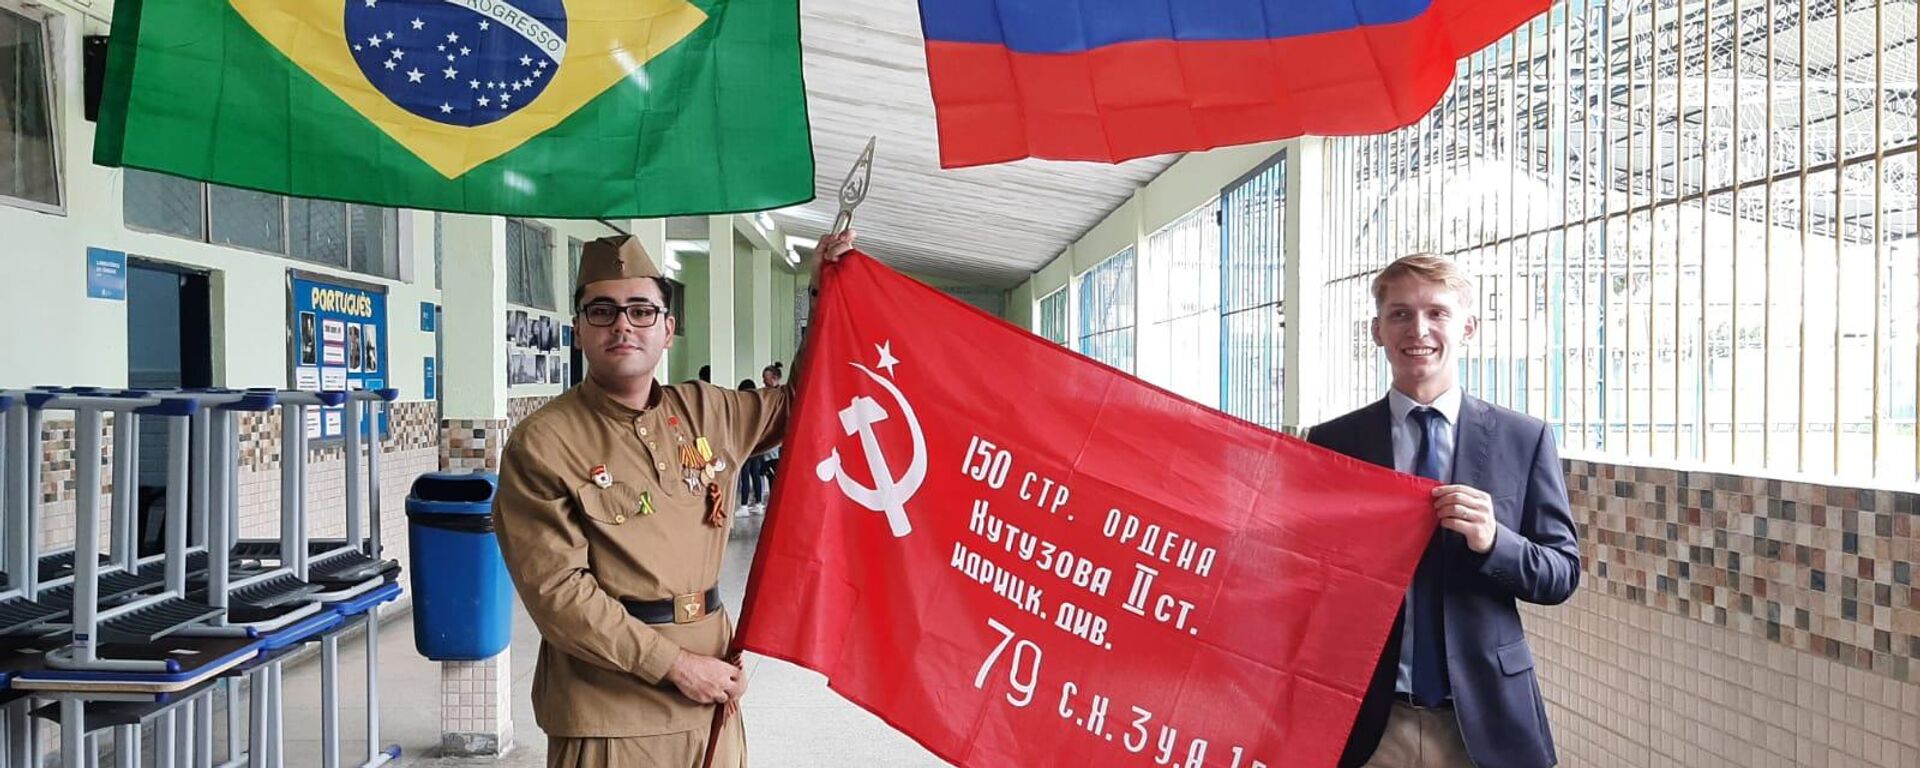 O professor Lucas Rubio, vestido de soldado do Exército Vermelho, e , e Egor Sergachev, chefe do protocolo do Consulado da Rússia no Rio de Janeiro, em 9 de maio de 2022.  - Sputnik Brasil, 1920, 09.05.2022